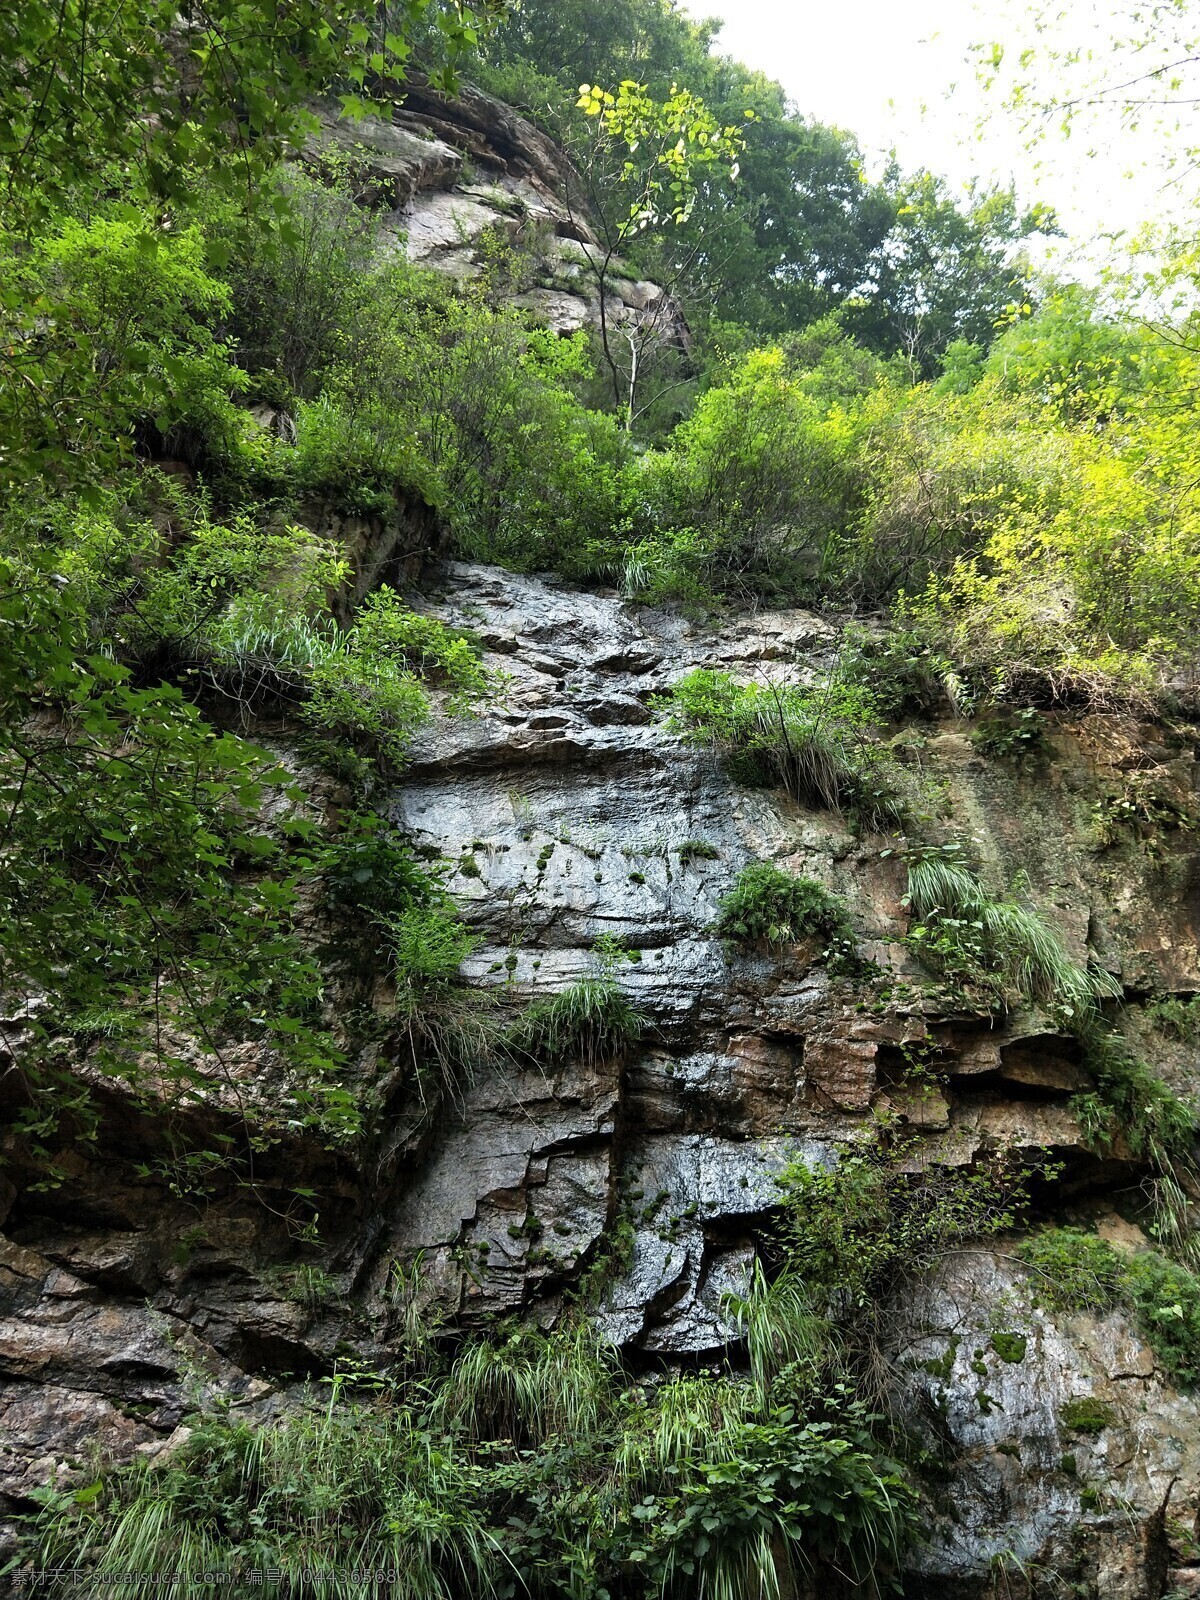 悬崖峭壁 石壁 草木丛生 翠绿 湿漉漉 陡峭 直上直下 高 自然景观 自然风景